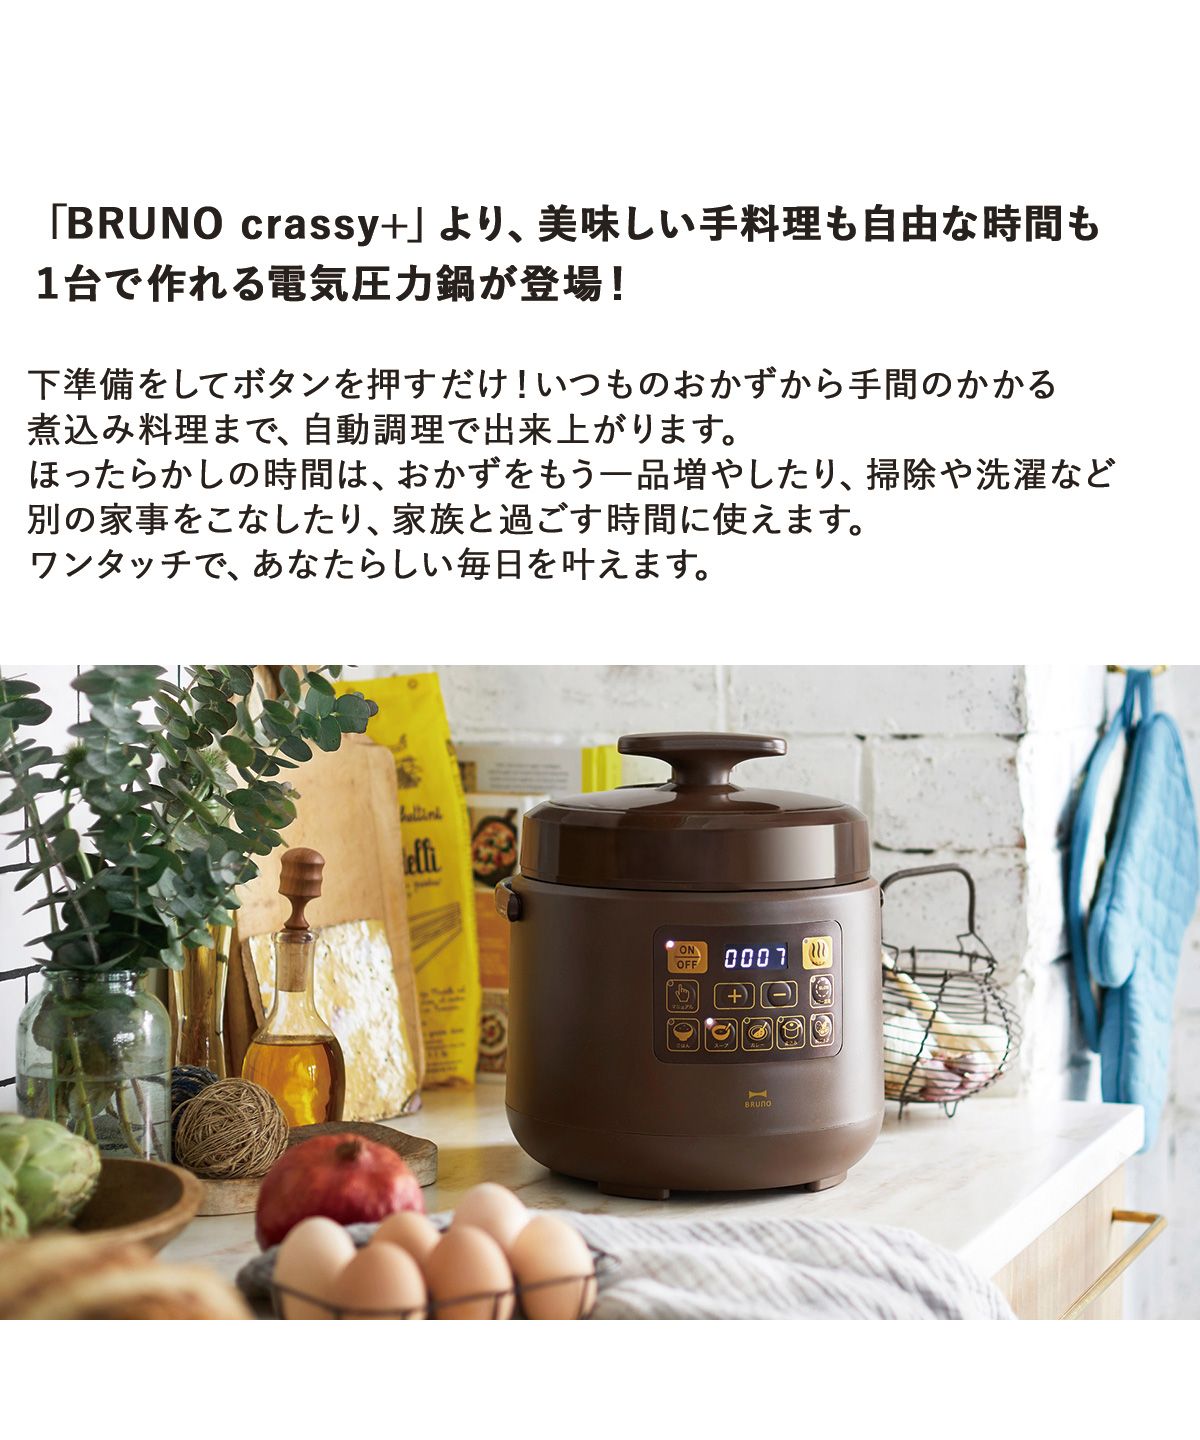 驚きの値段で BRUNO 電気圧力鍋 マルチ圧力クッカー BOE058 - 炊飯器 - alrc.asia